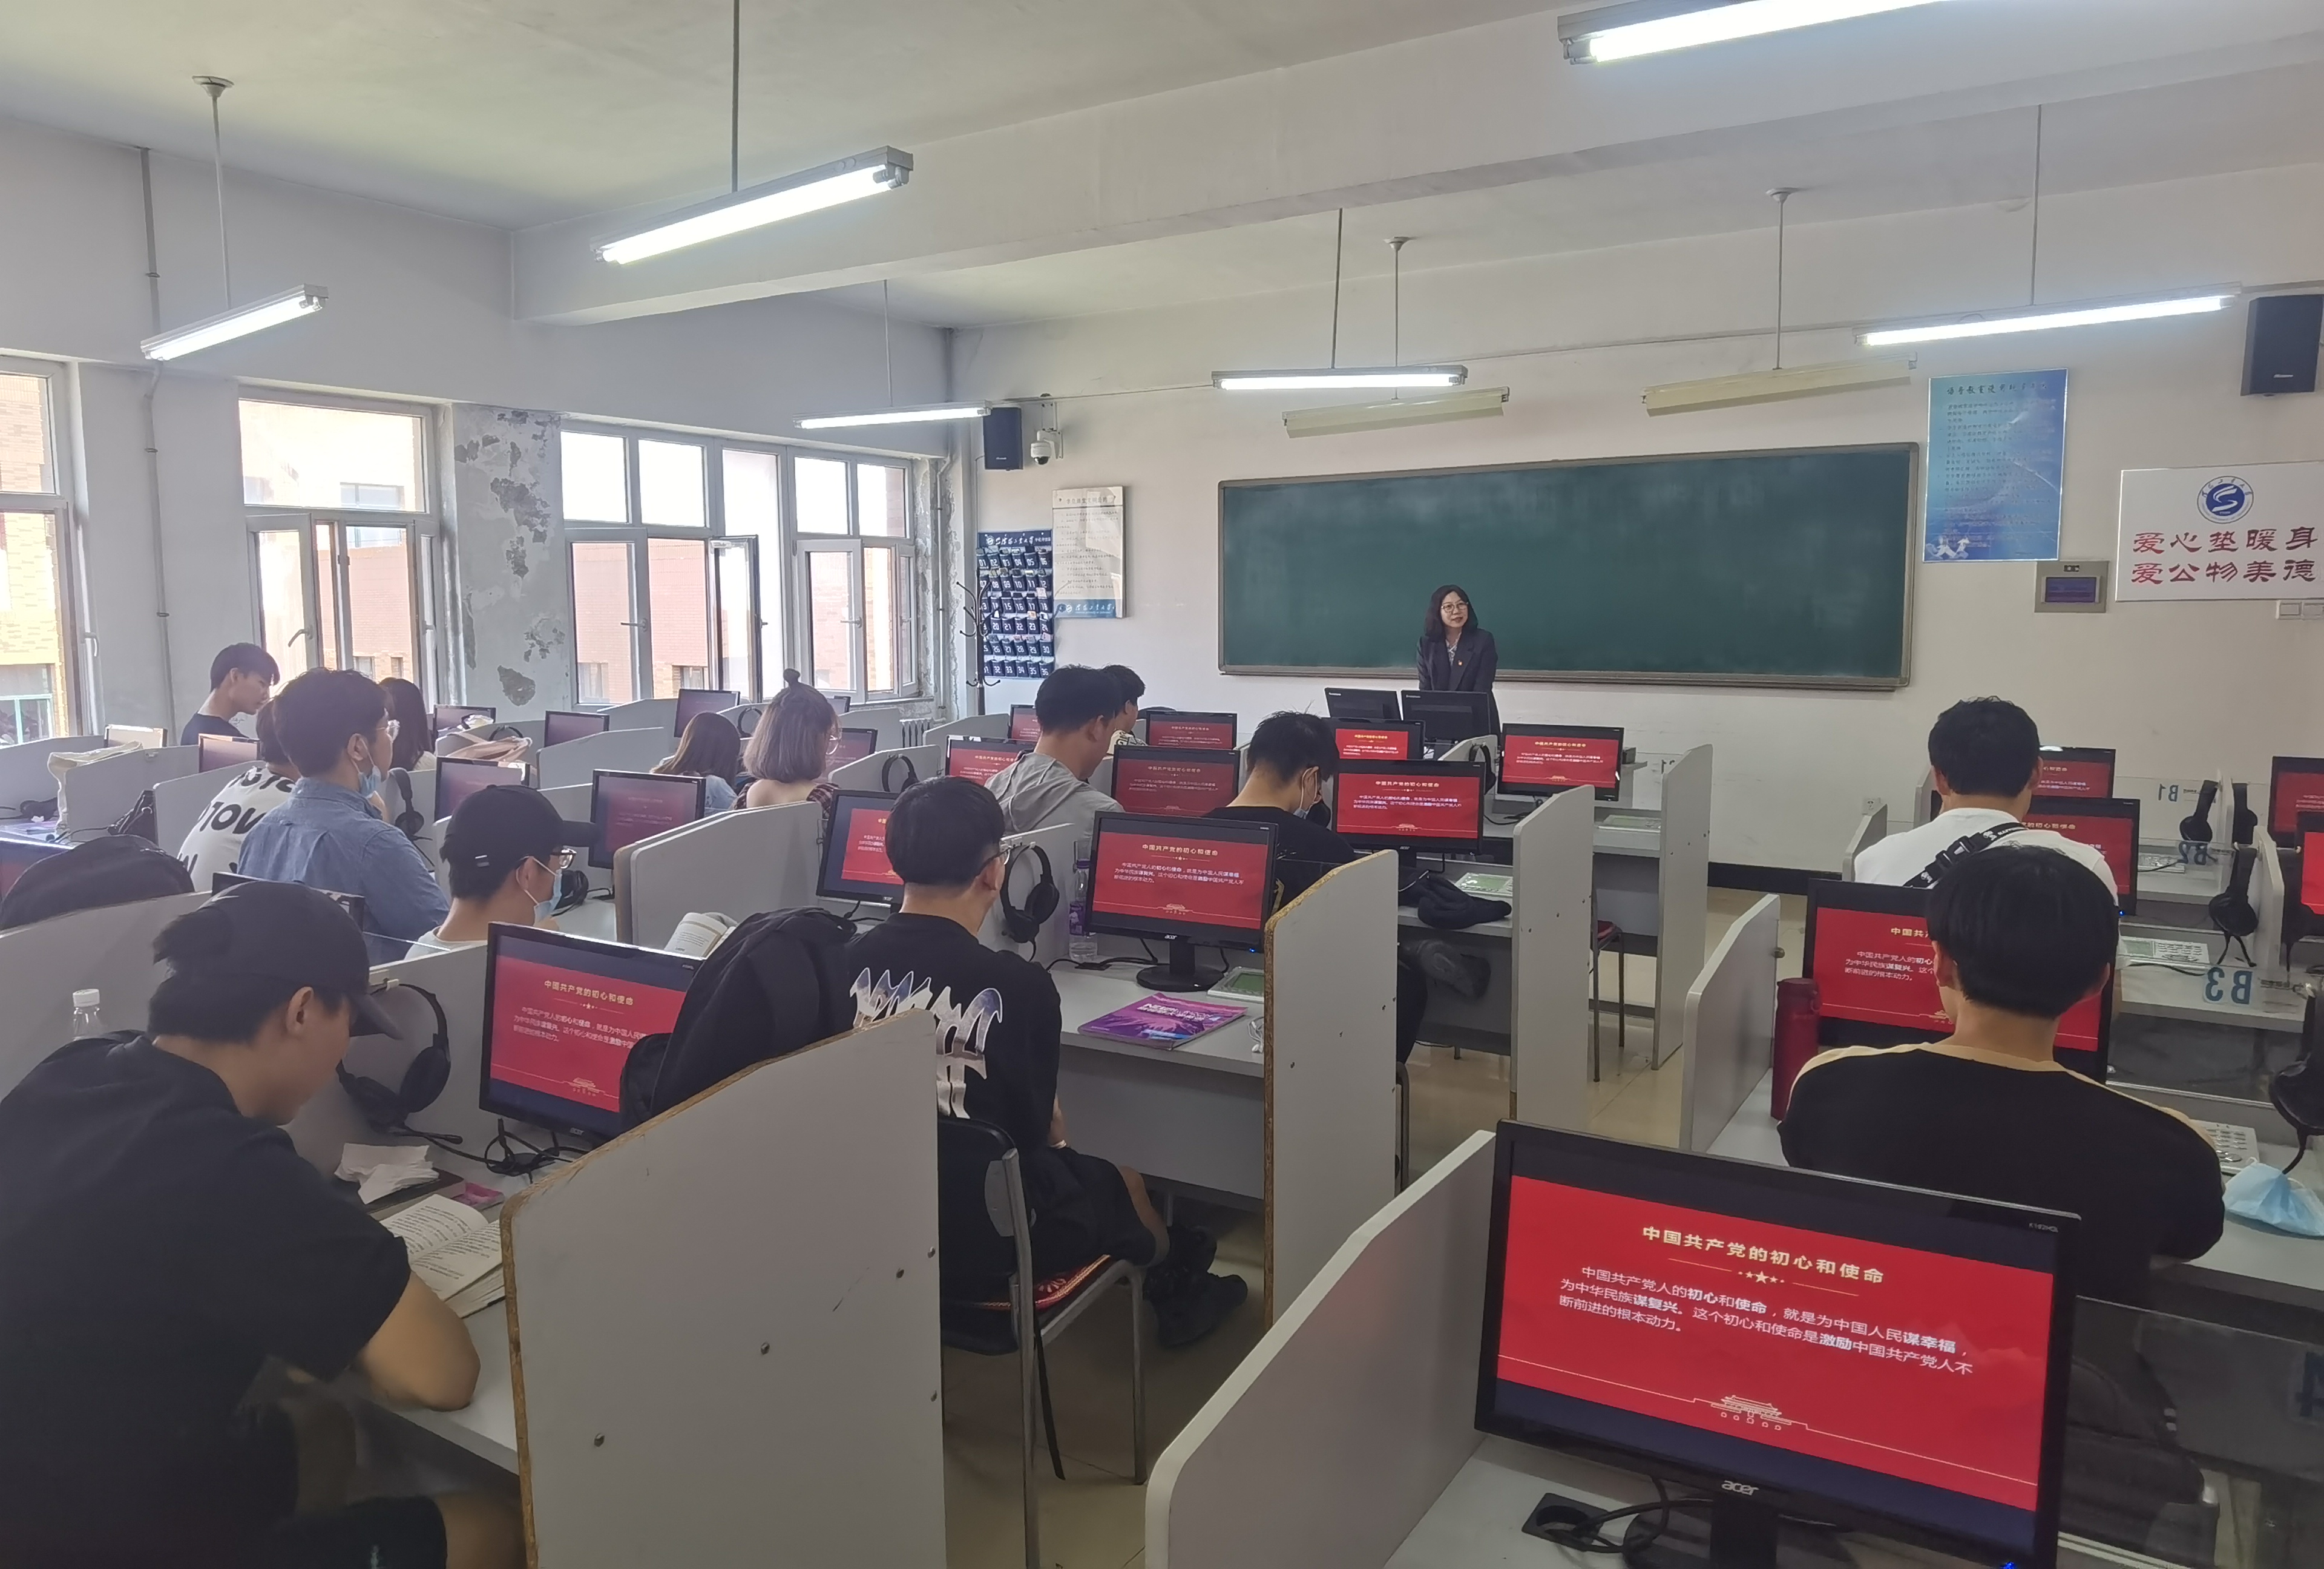 中国共产党的初心和使命---李海燕老师的课堂.jpg